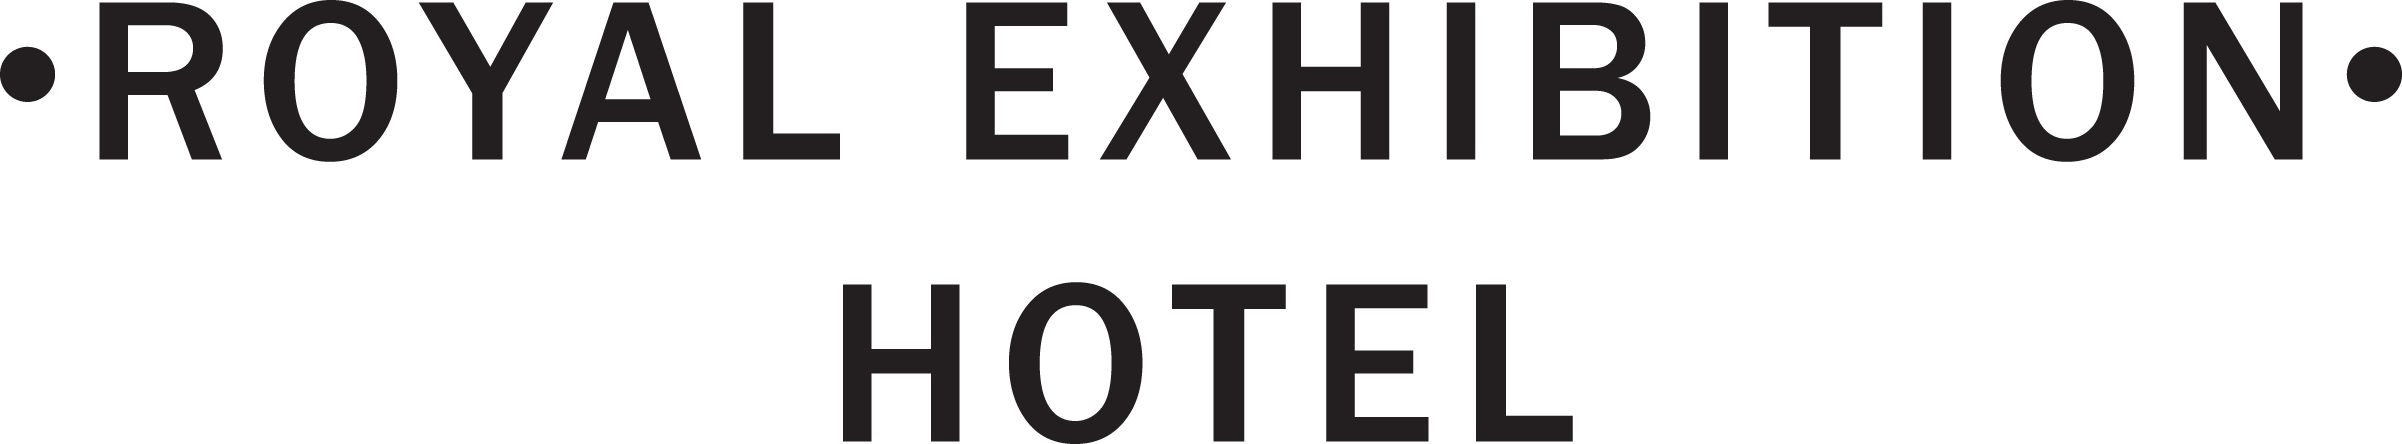 Royal Exhibition Hotel